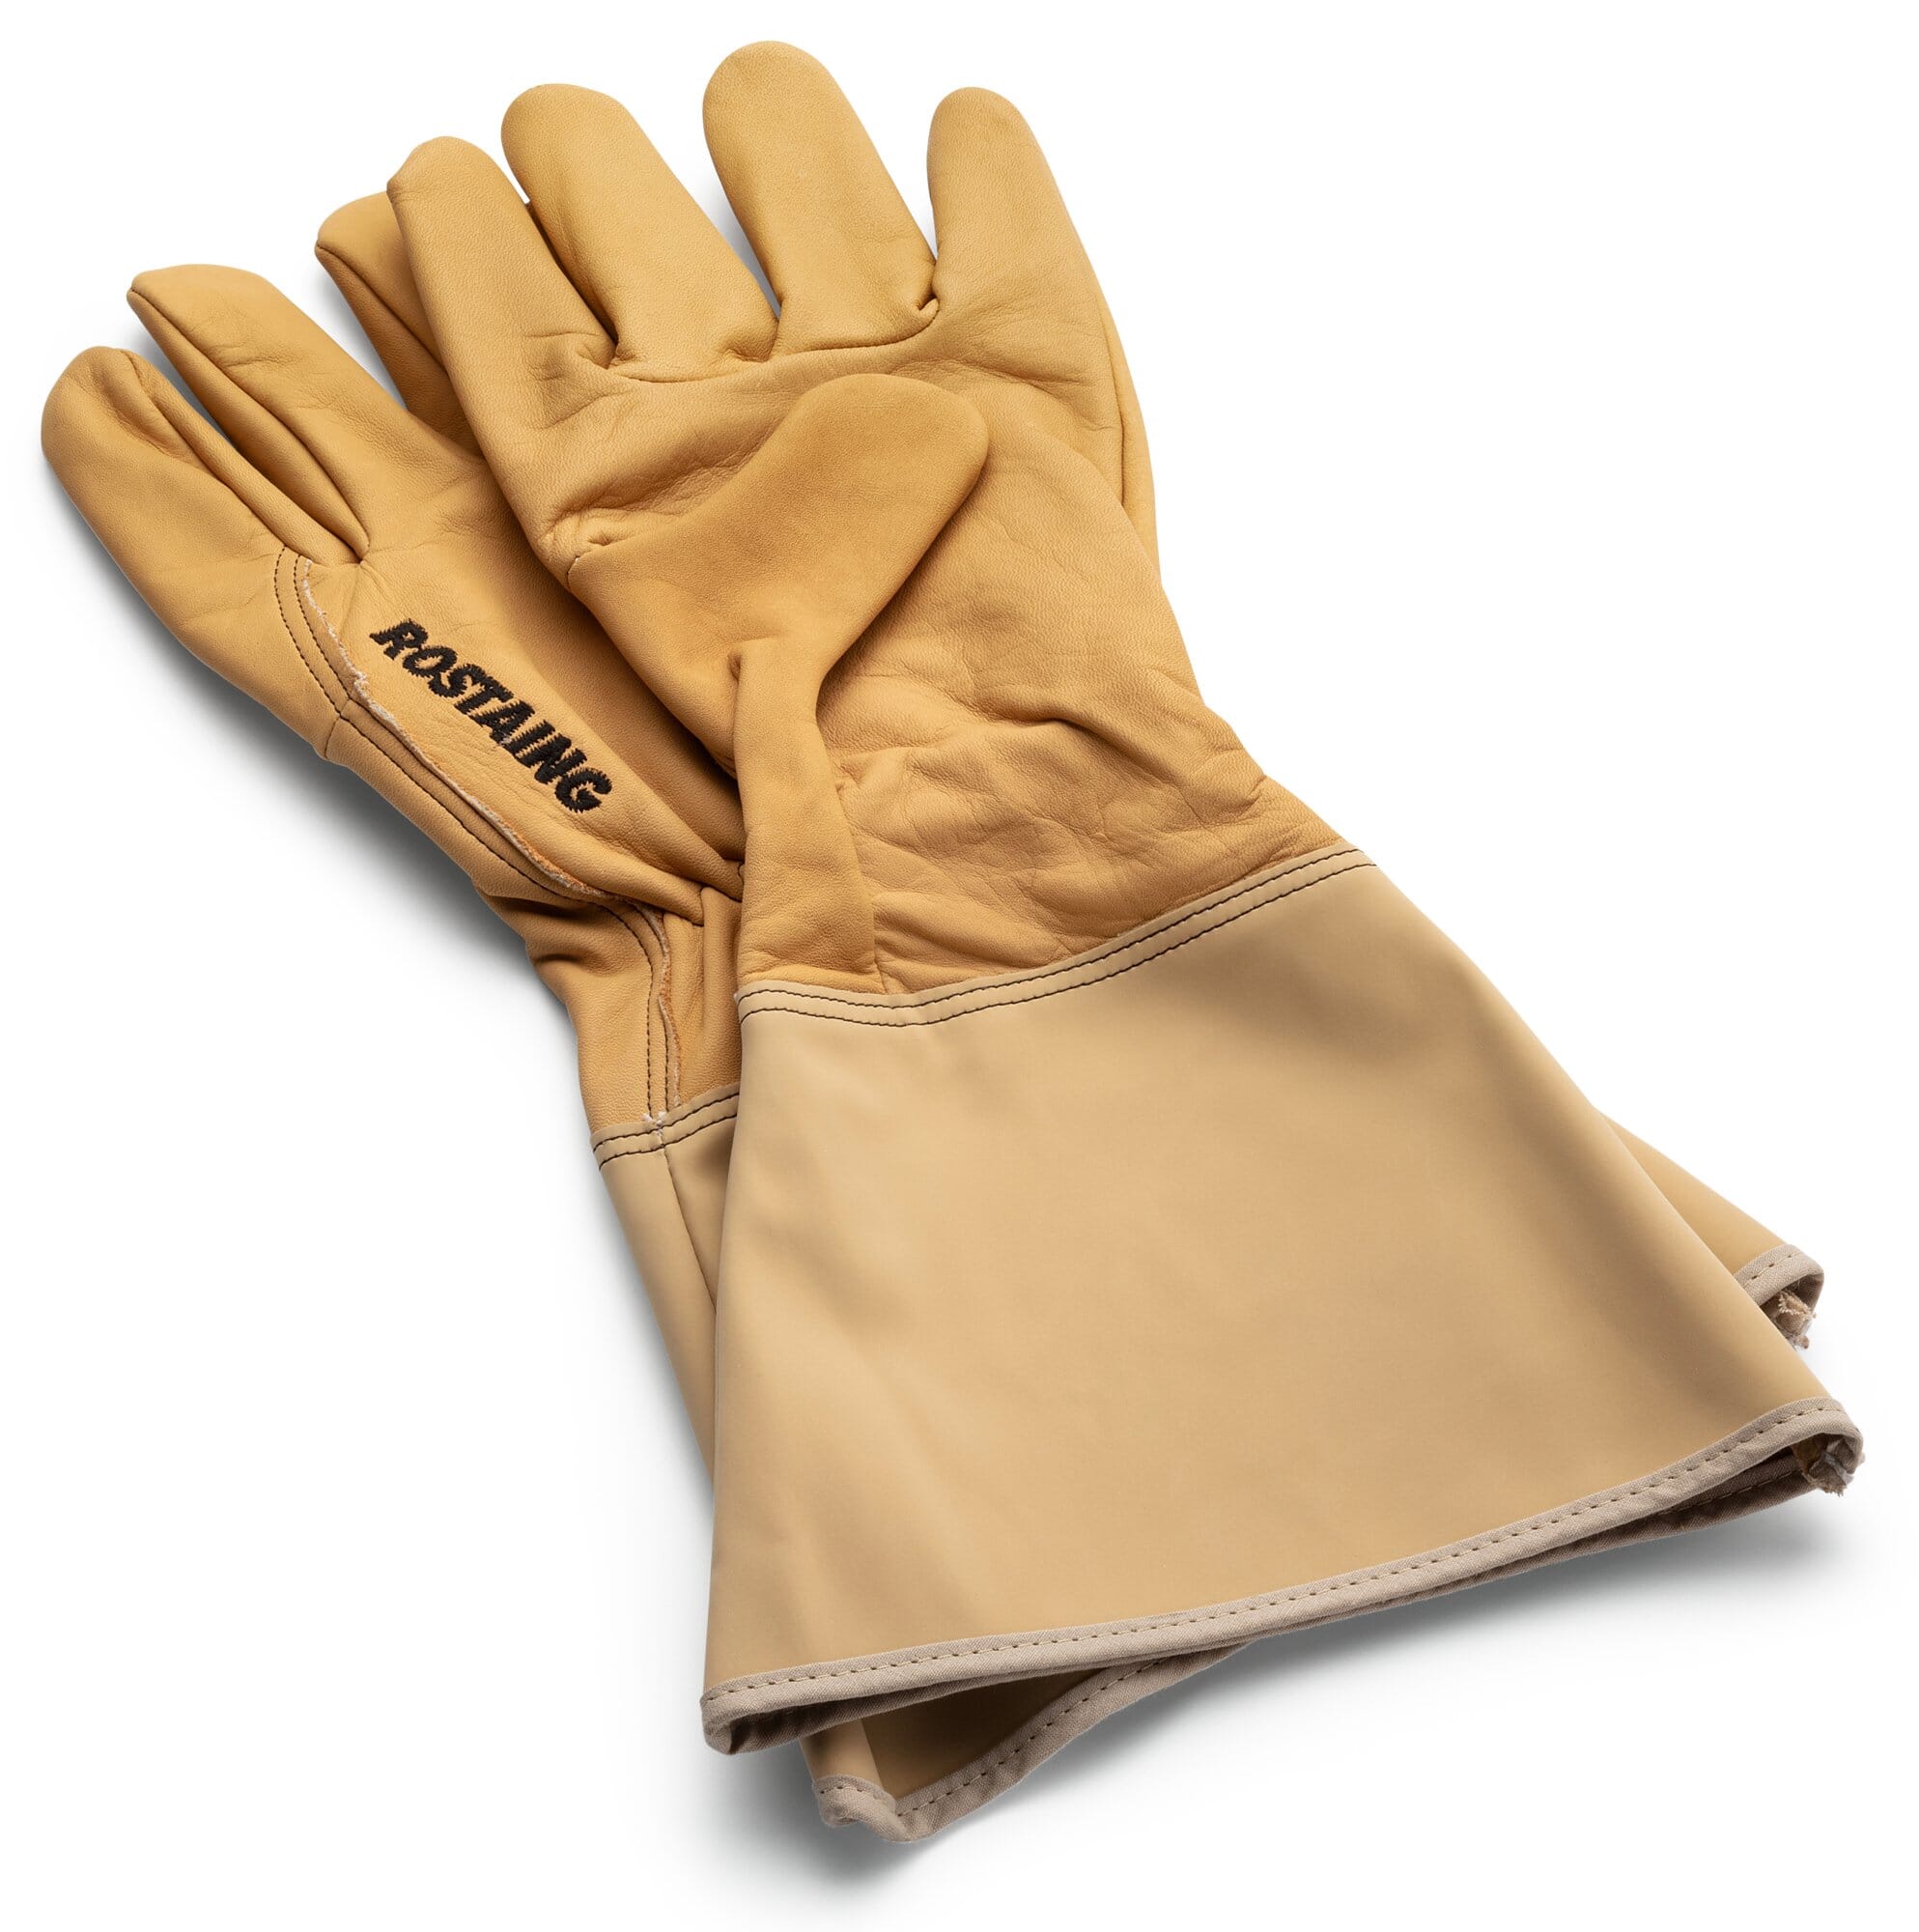 Mud Gloves Gauntlet Style Mens Gardening Gloves 17020 Case of 6 